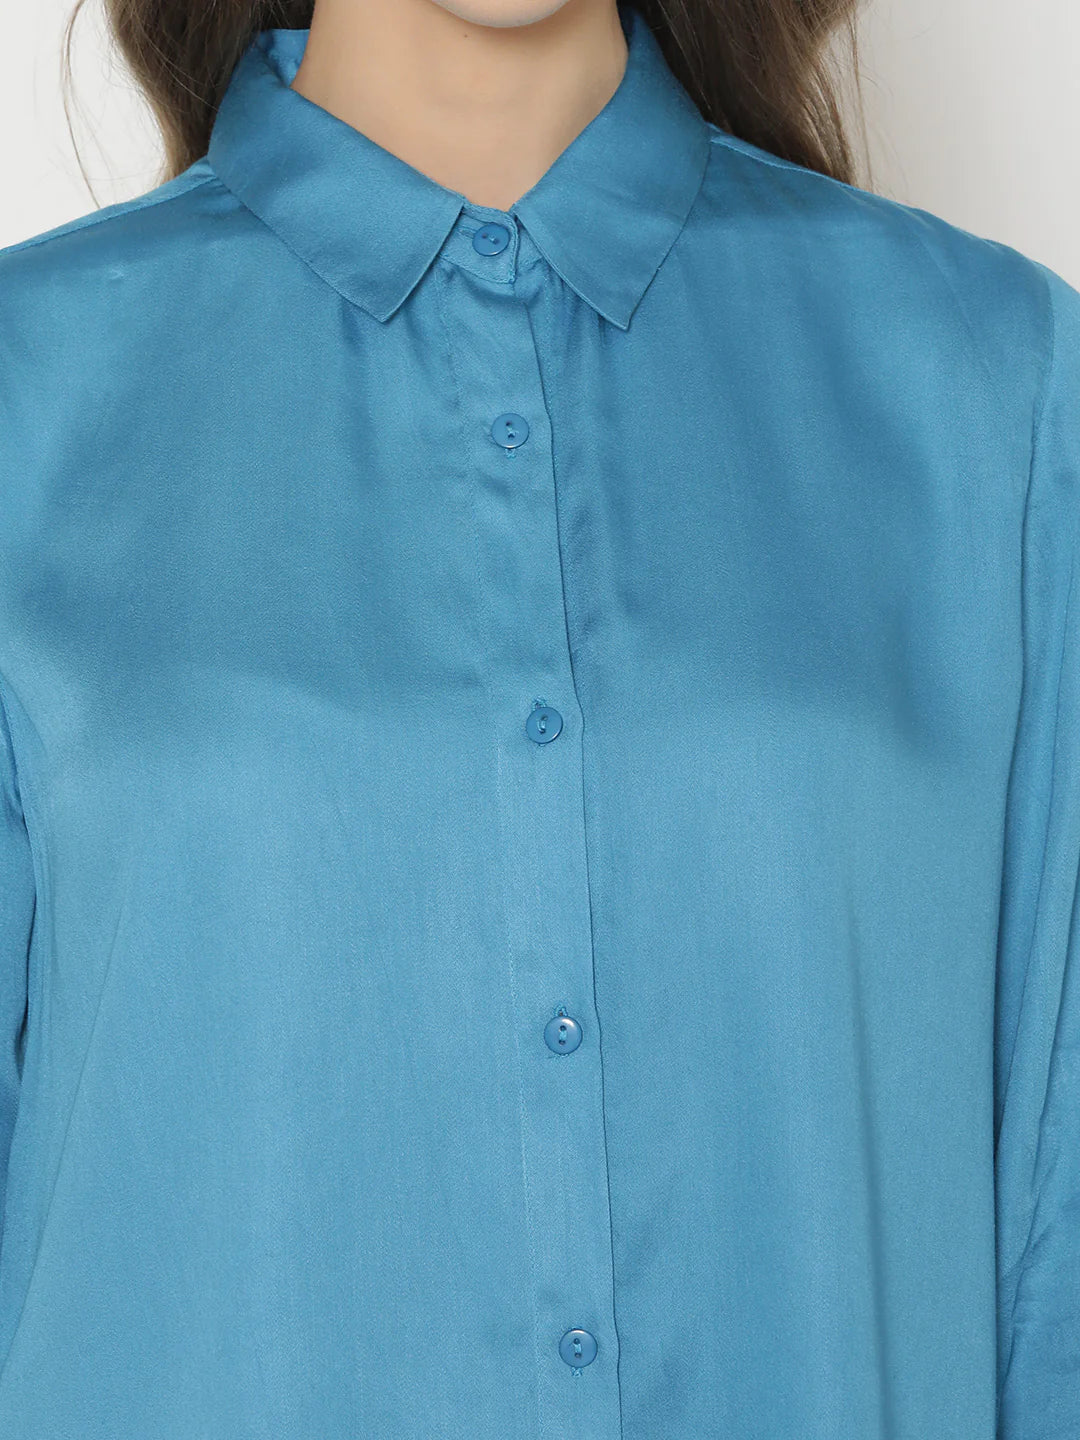 Blue Button-Down Shirt for Women | Satin Bliss Button-Down Shirt